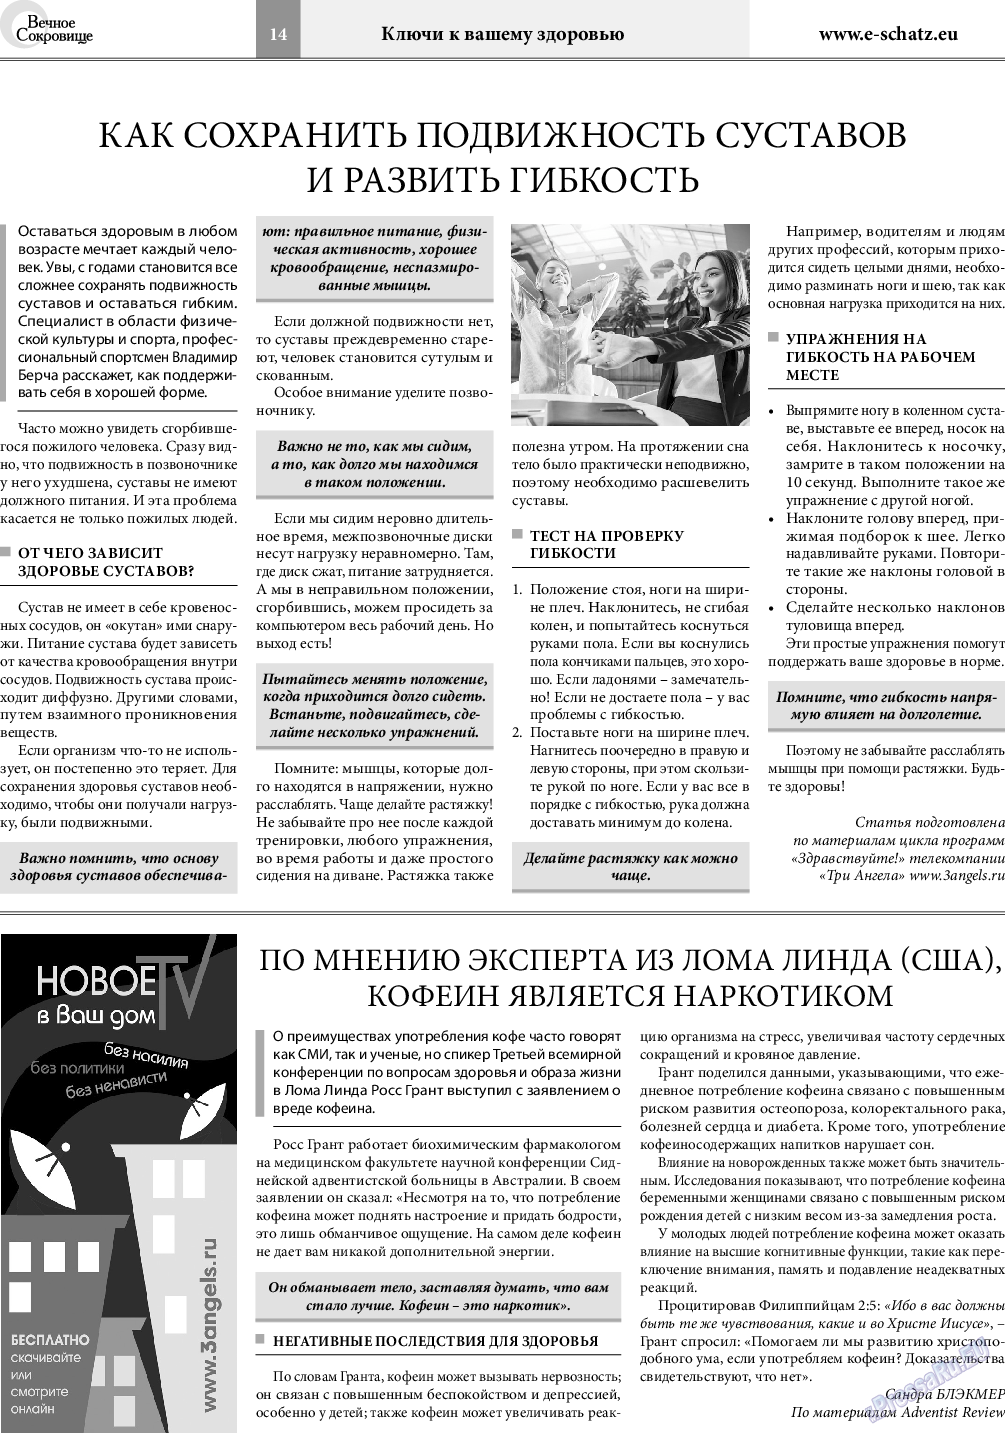 Вечное сокровище, газета. 2019 №5 стр.14